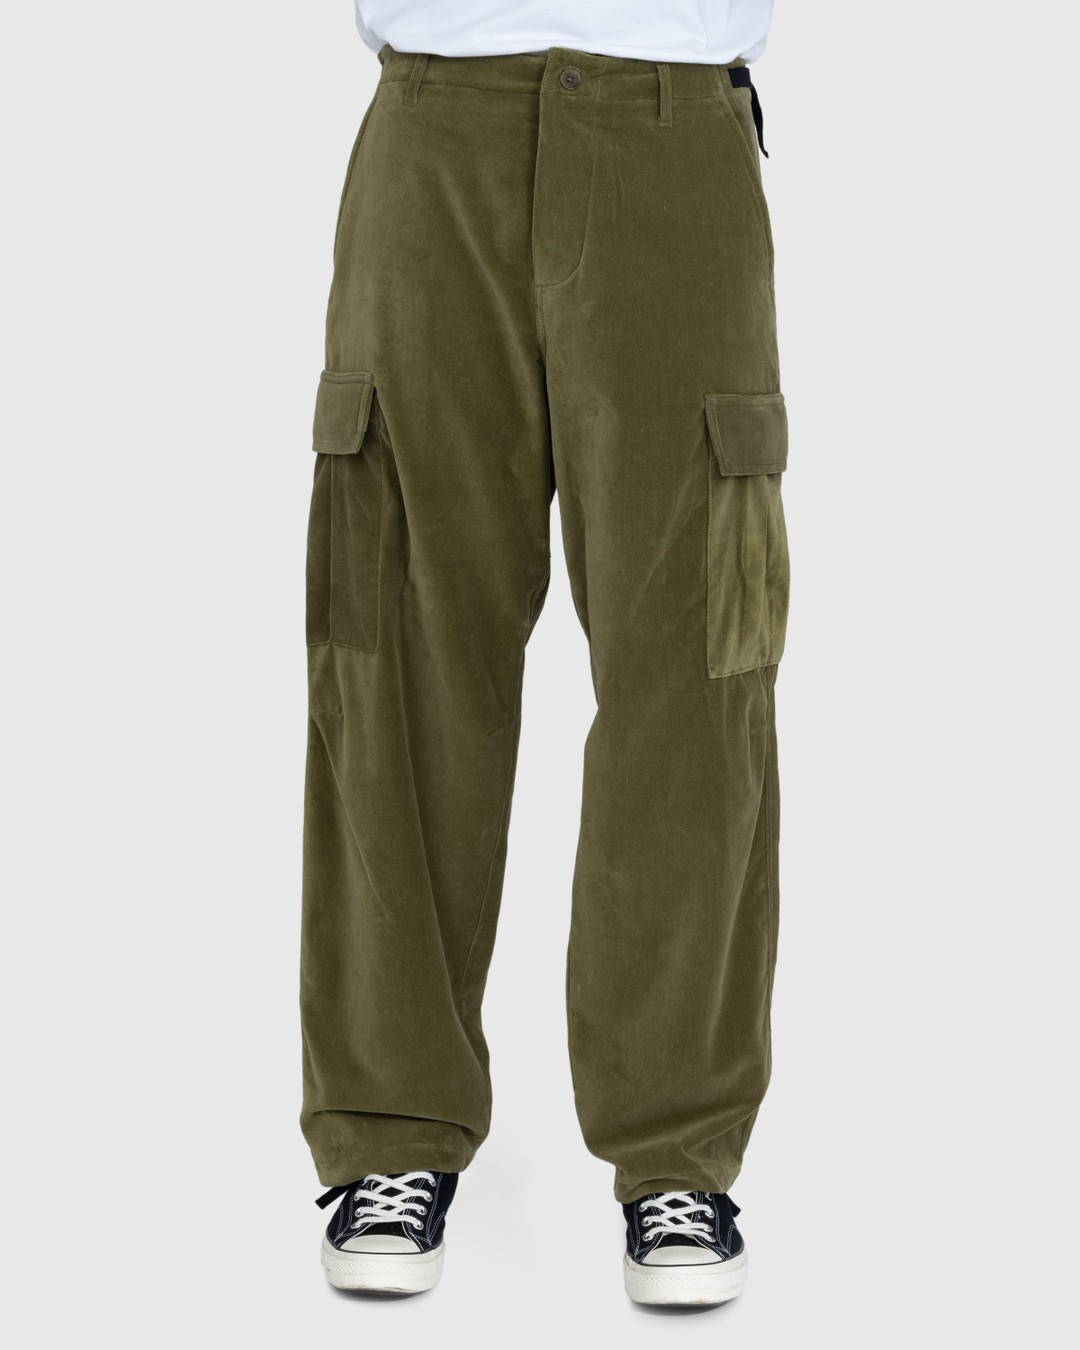 Highsnobiety – Moleskin Cargo Pant Olive - Cargo Pants - Green - Image 2